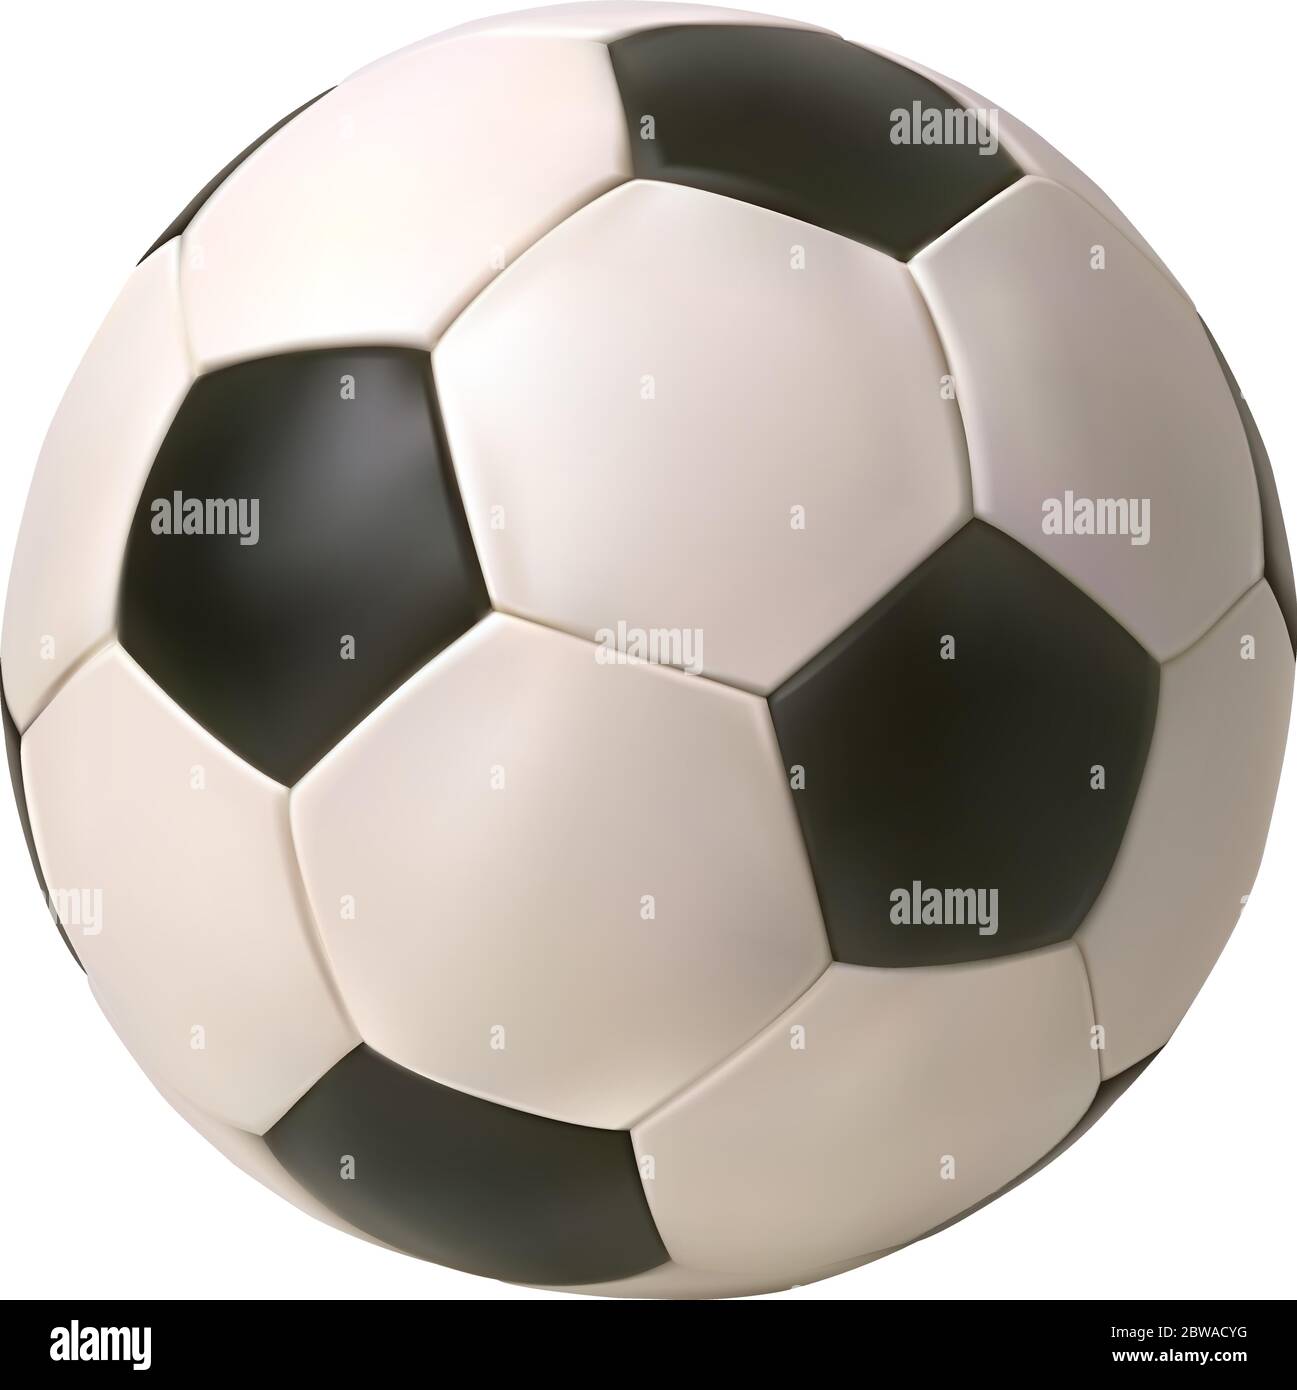 Pallone da calcio vettoriale realistico. Isolato su sfondo bianco. Illustrazione Vettoriale